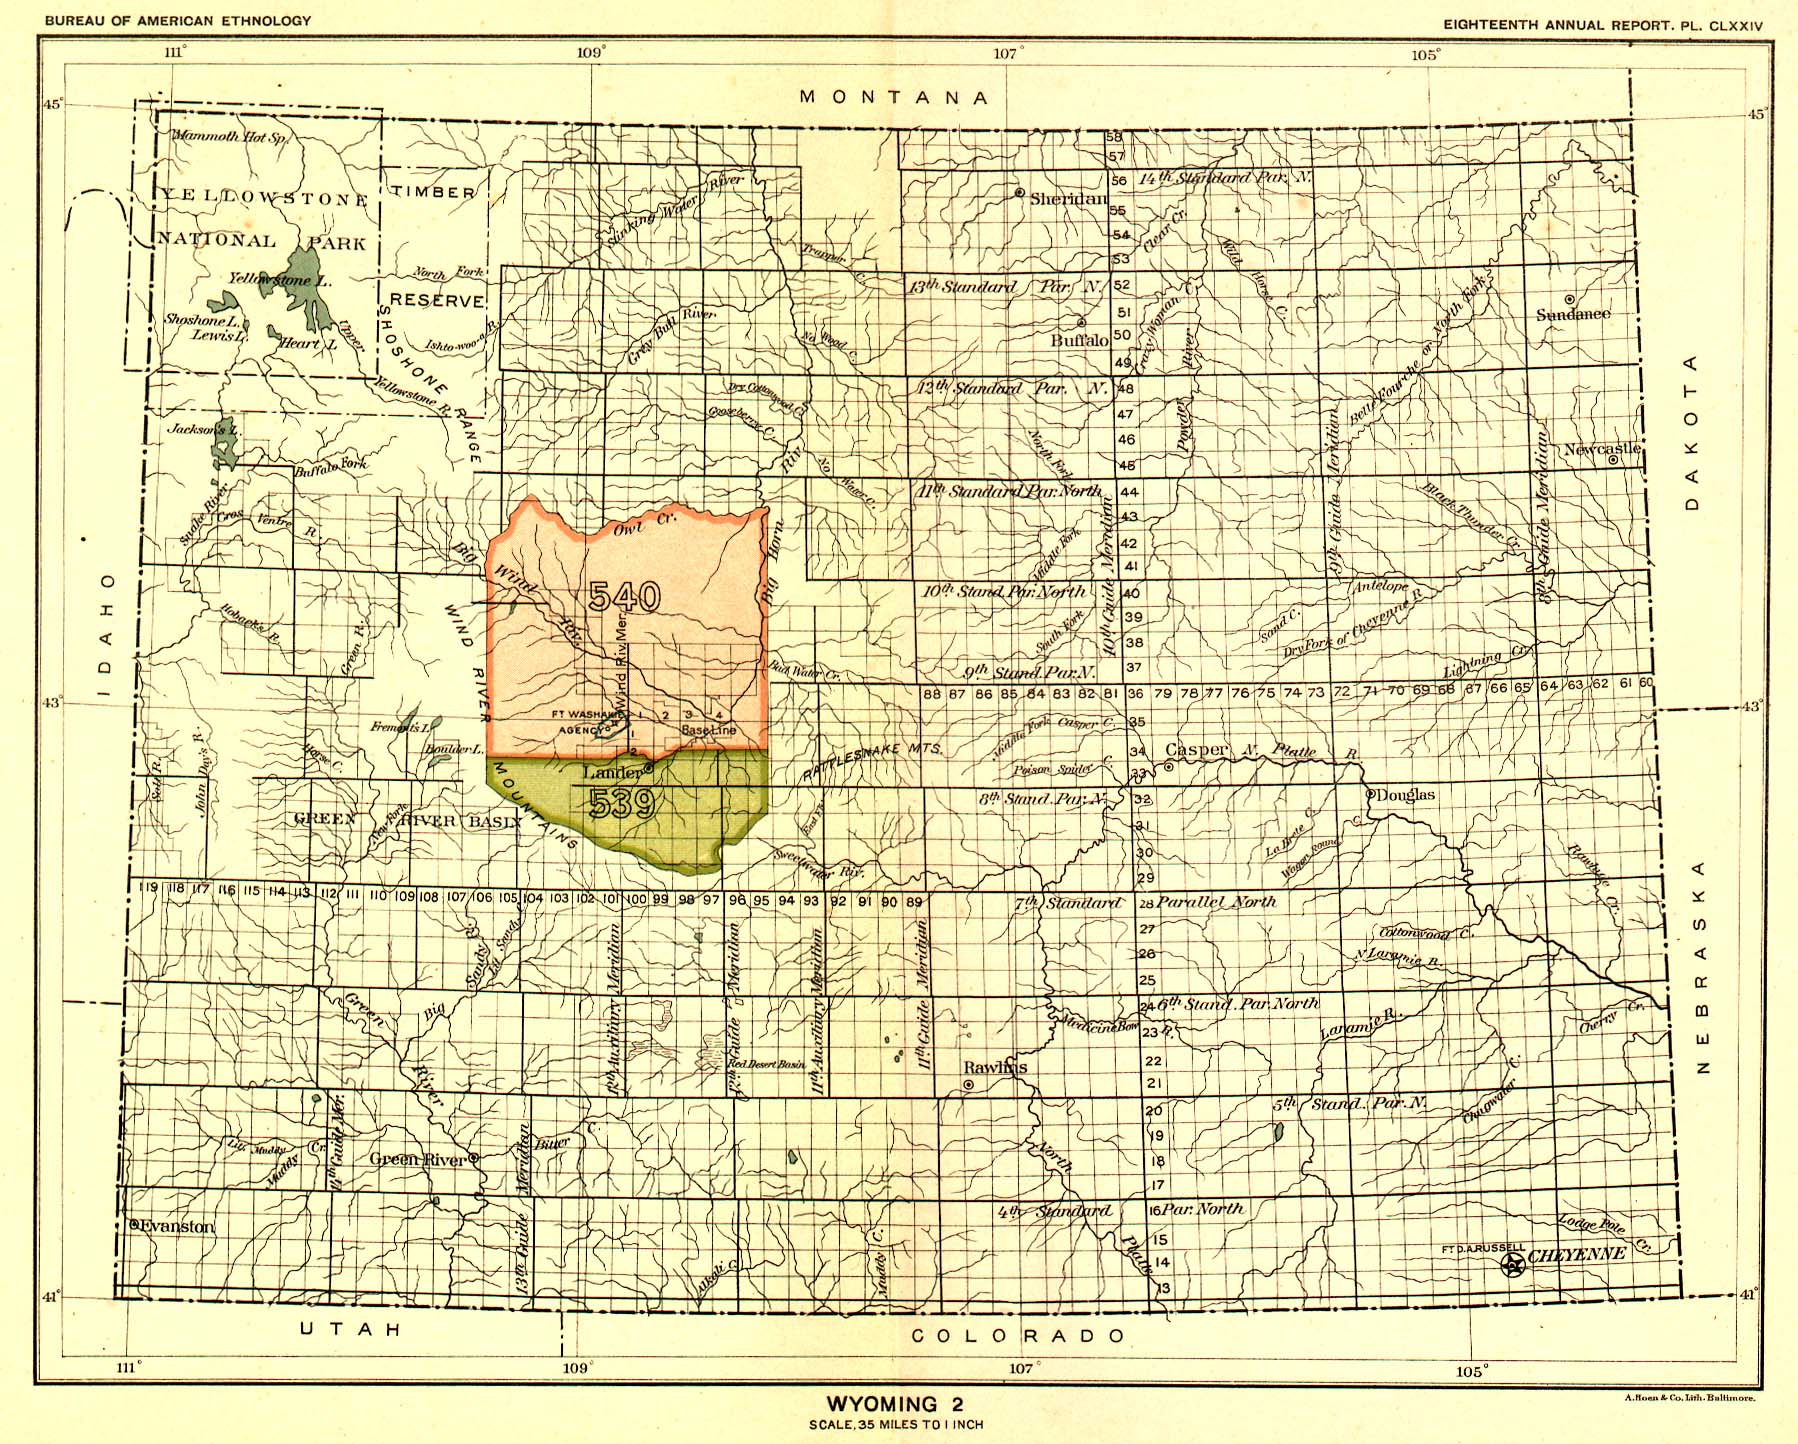 Wyoming 2, Map 67